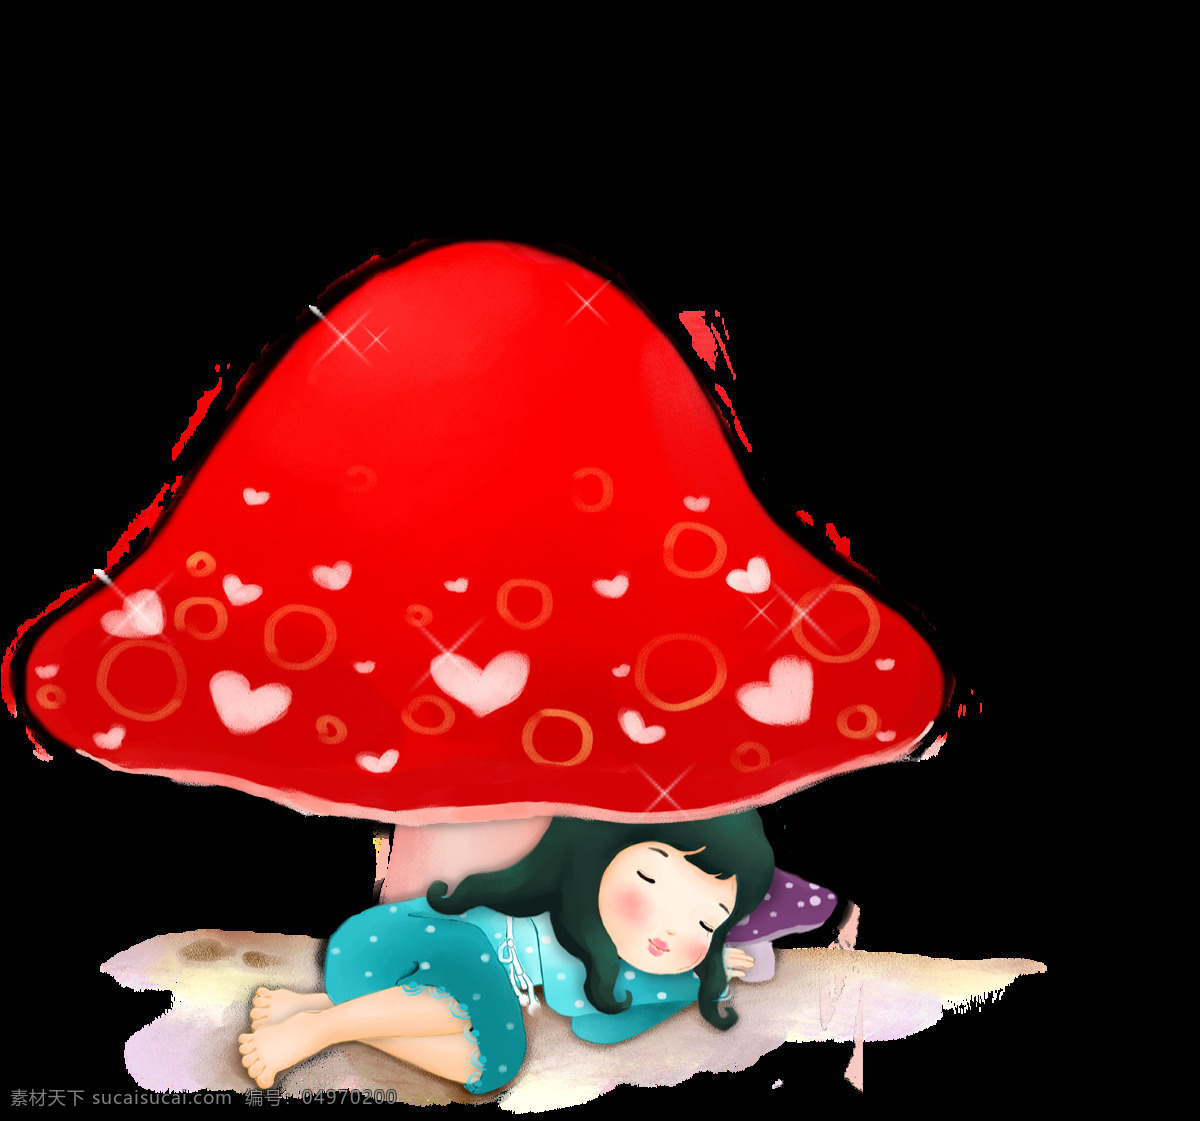 红色 蘑菇 可爱 睡觉 小女孩 装饰 图案 可爱女孩 装饰图案 设计元素 儿童 安全 红色蘑菇 可爱蘑菇 睡觉女孩